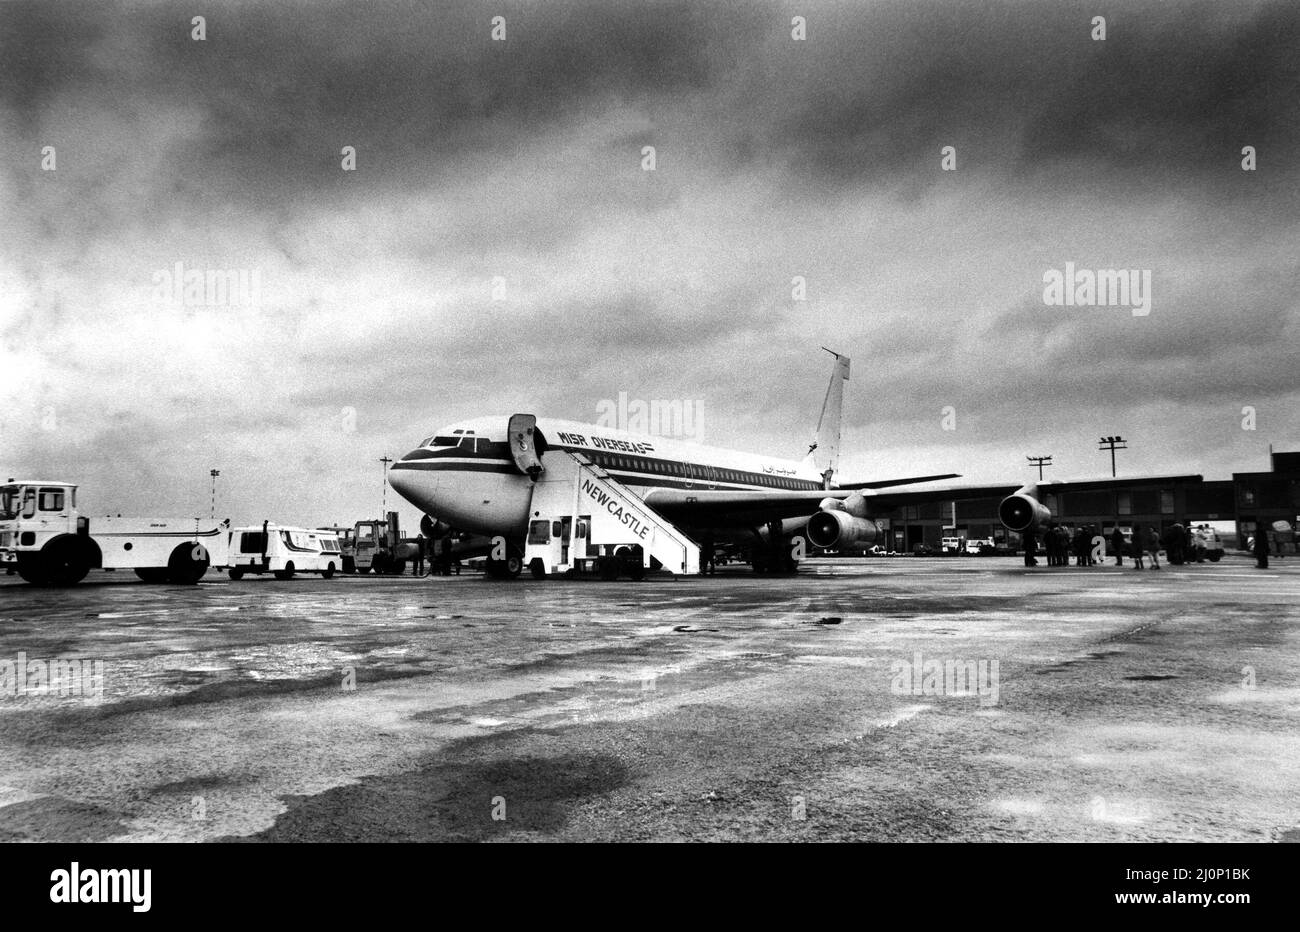 Una MISR Egyptian Airlines está cargada antes de despegar en el aeropuerto de Newcastle. 04/11/1984 Foto de stock